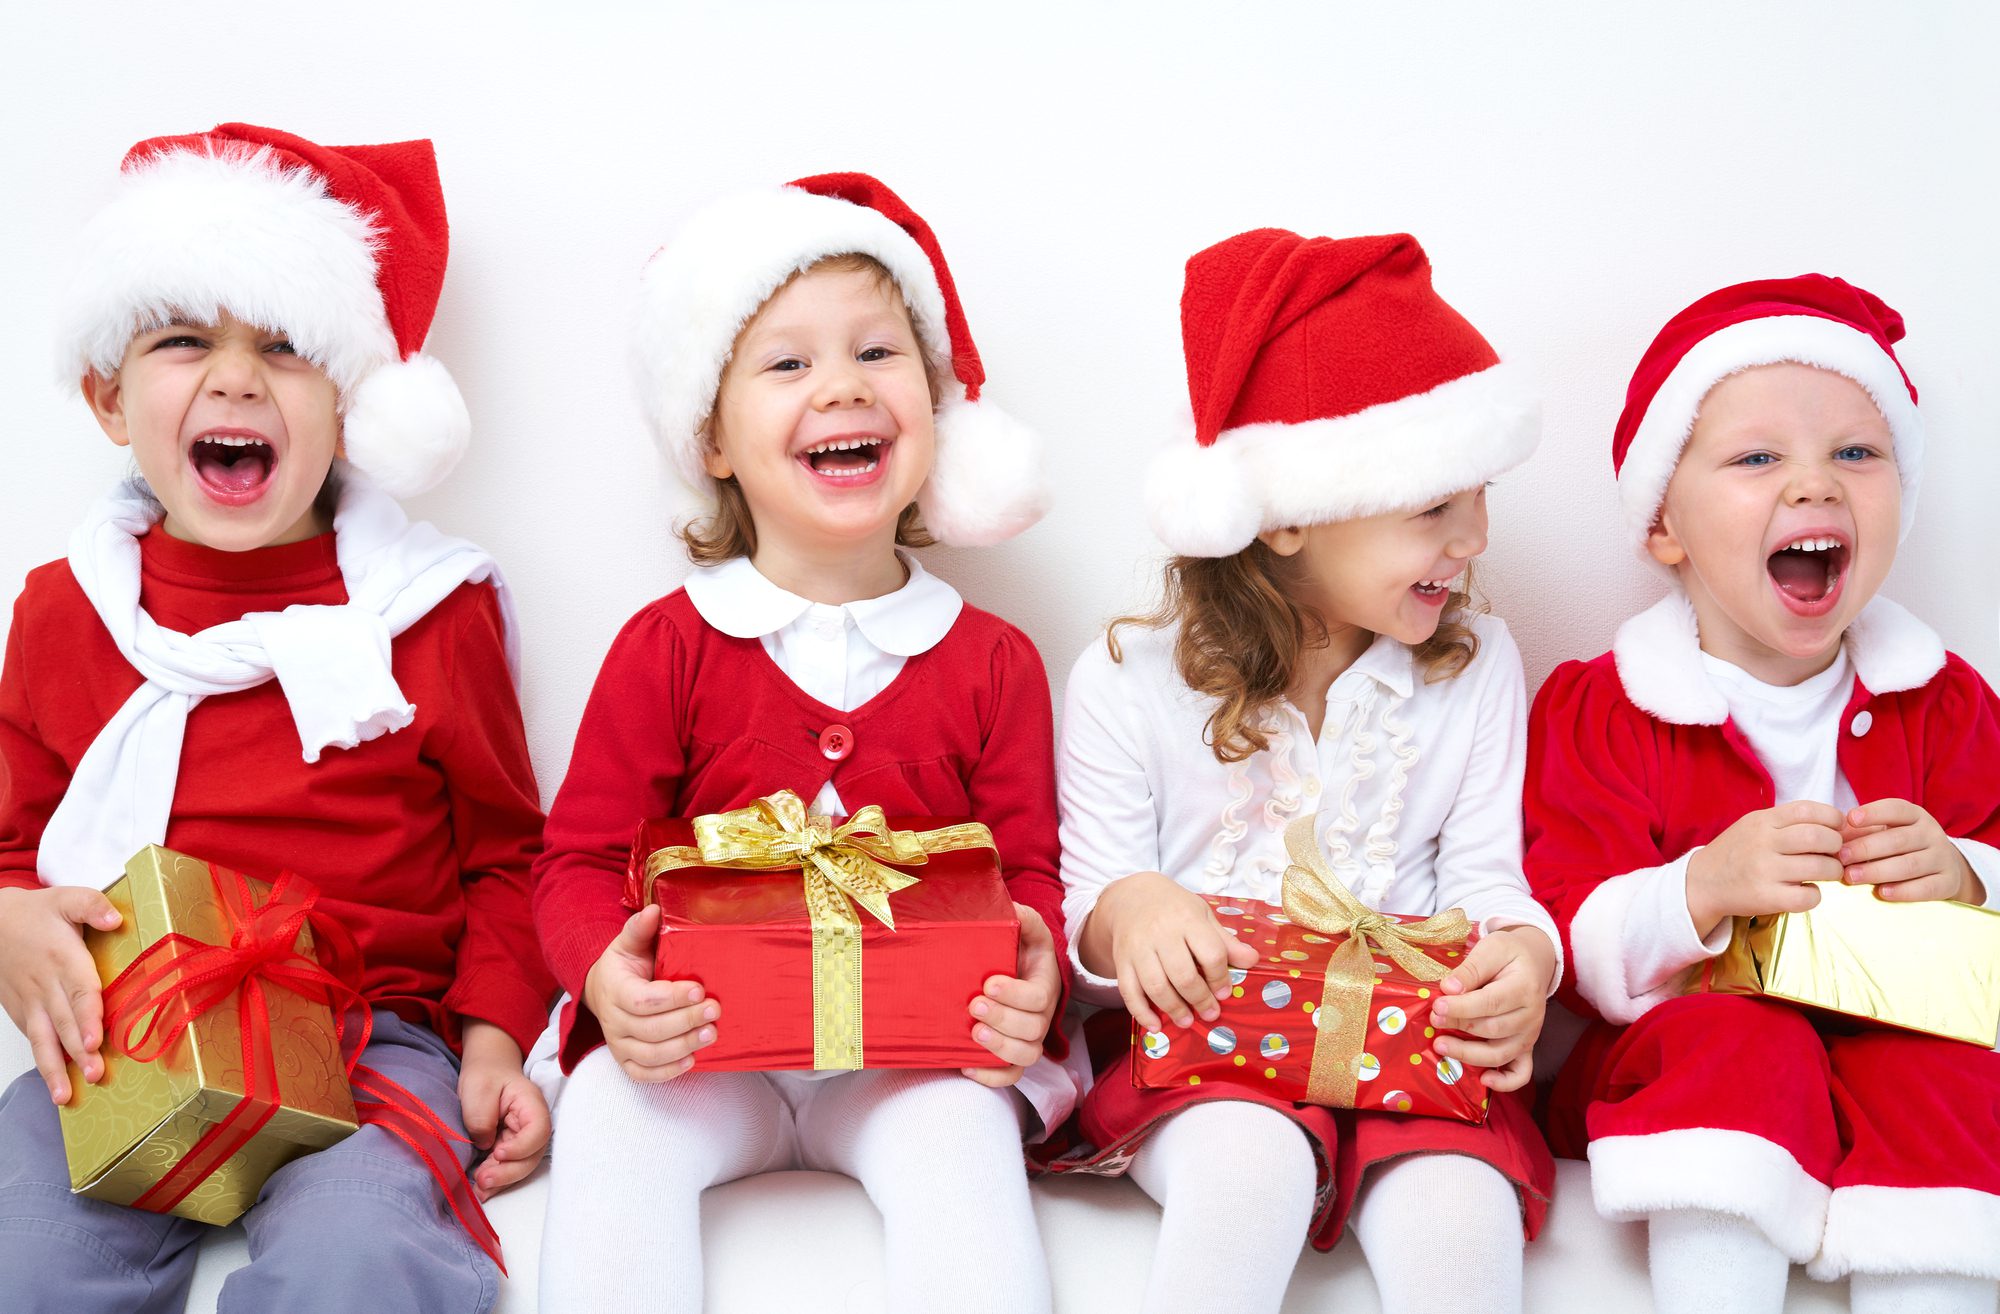 four children celebrating Christmas activities in Overland Park, KS